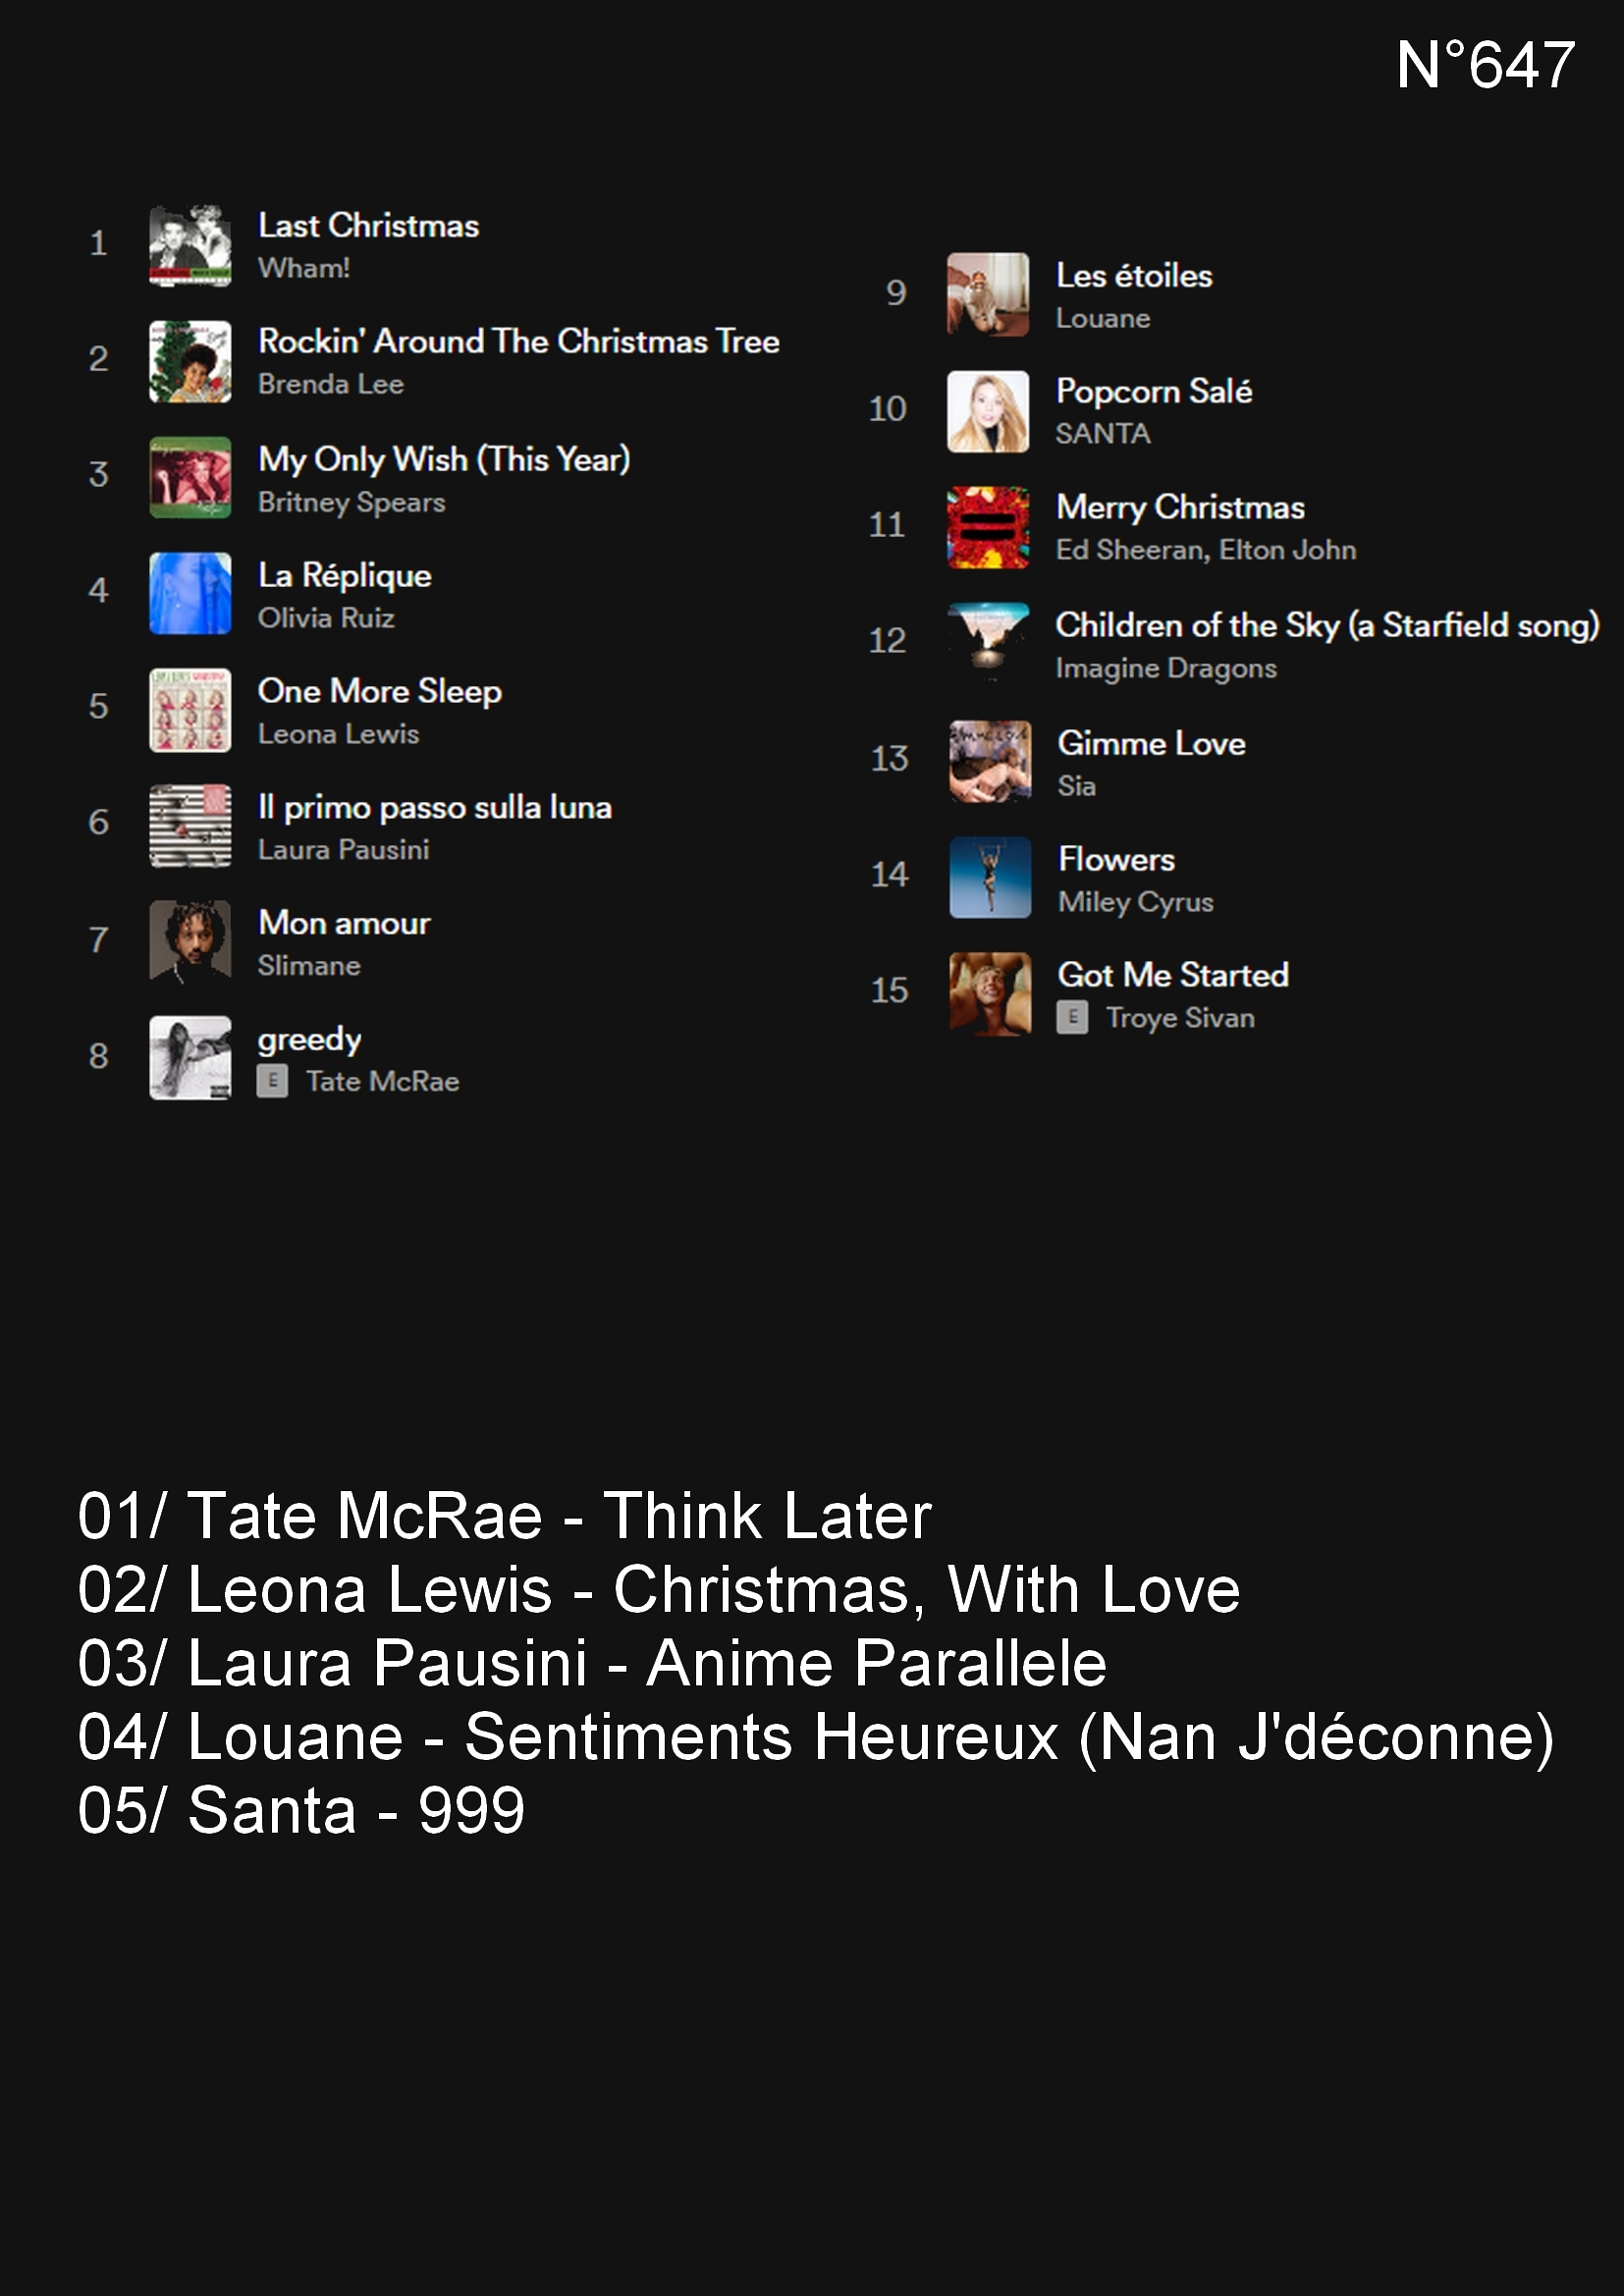 ‎Comment on fait - Single - Album by Vianney & Zazie - Apple Music